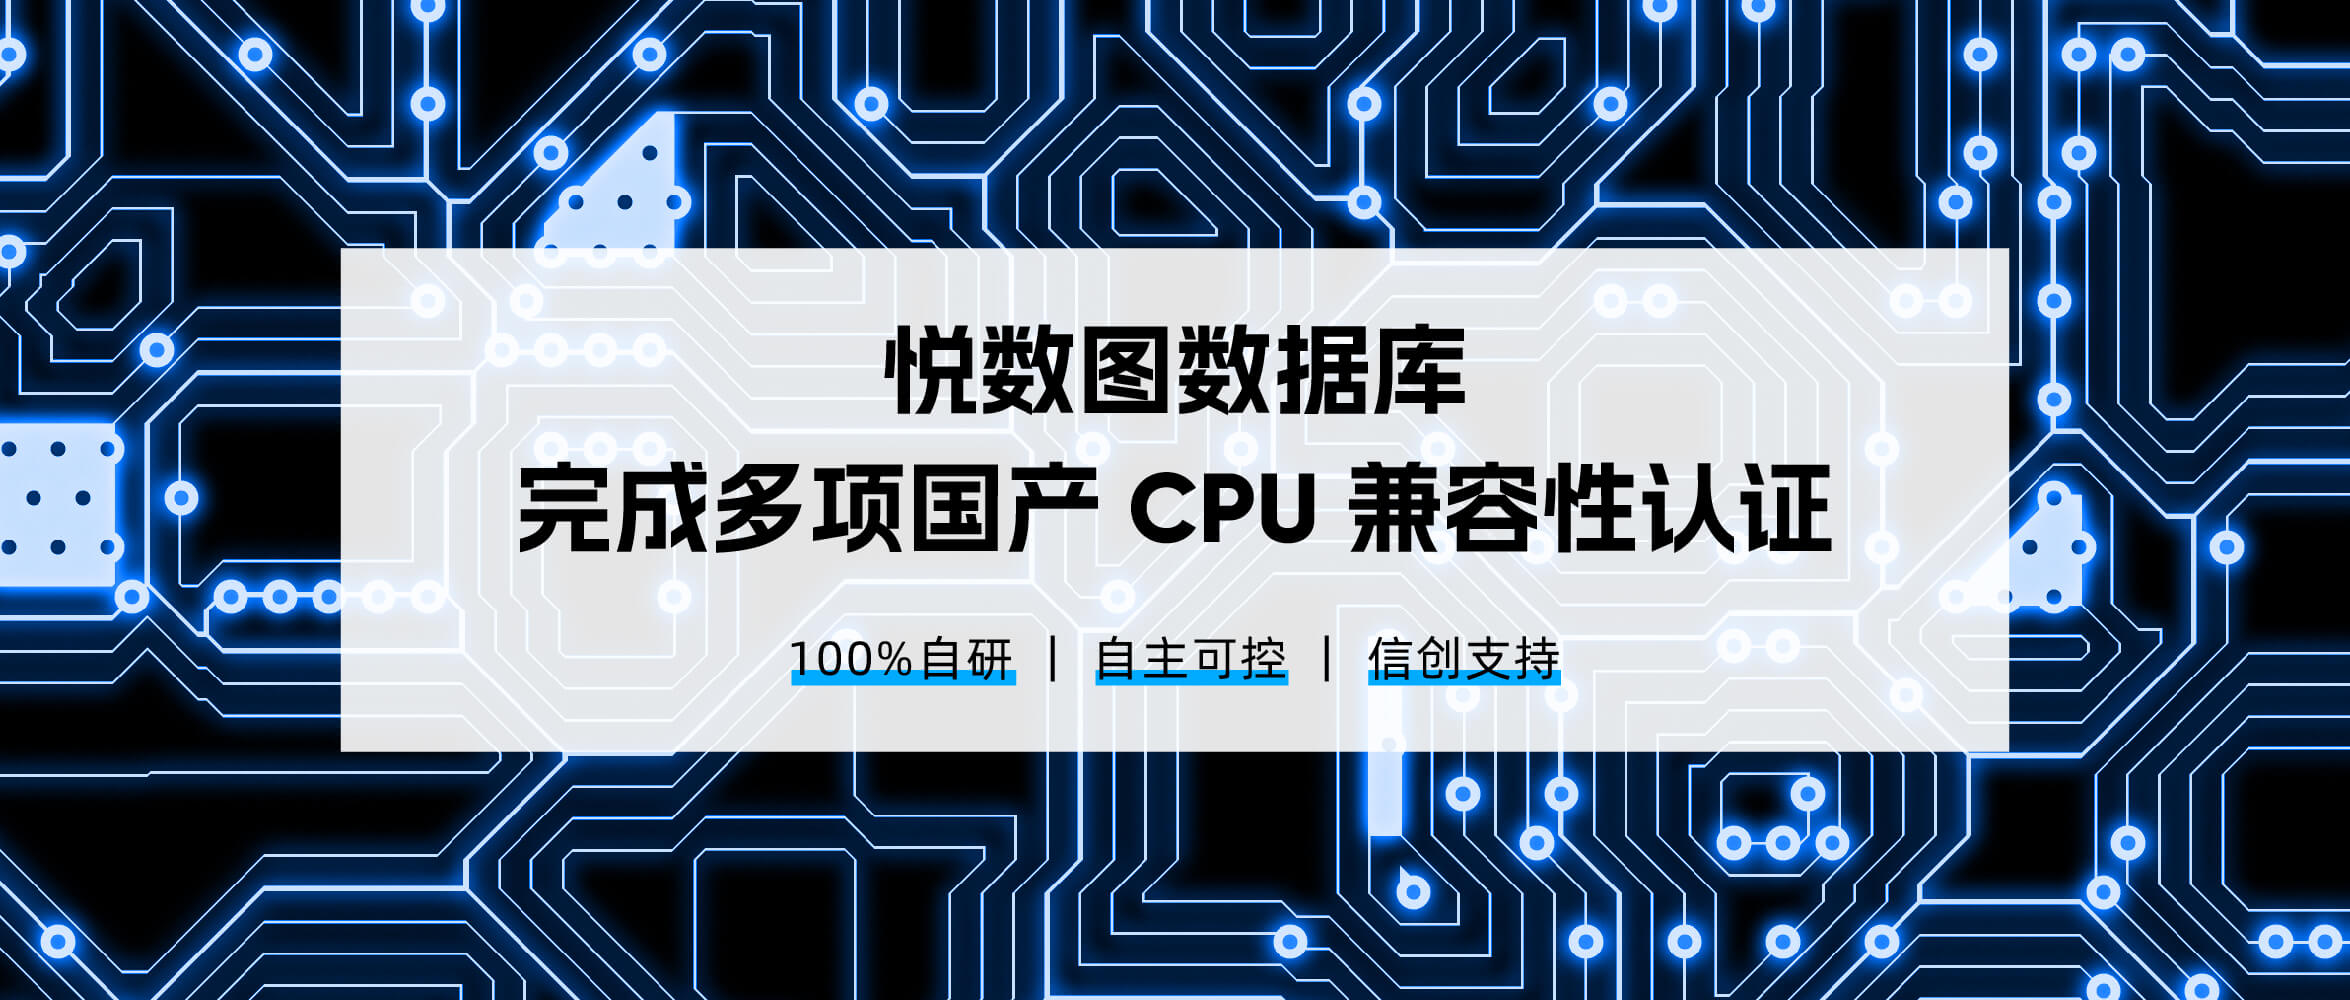 悦数图数据库完成与鲲鹏_飞腾_海光等多款国产 CPU的兼容性认证